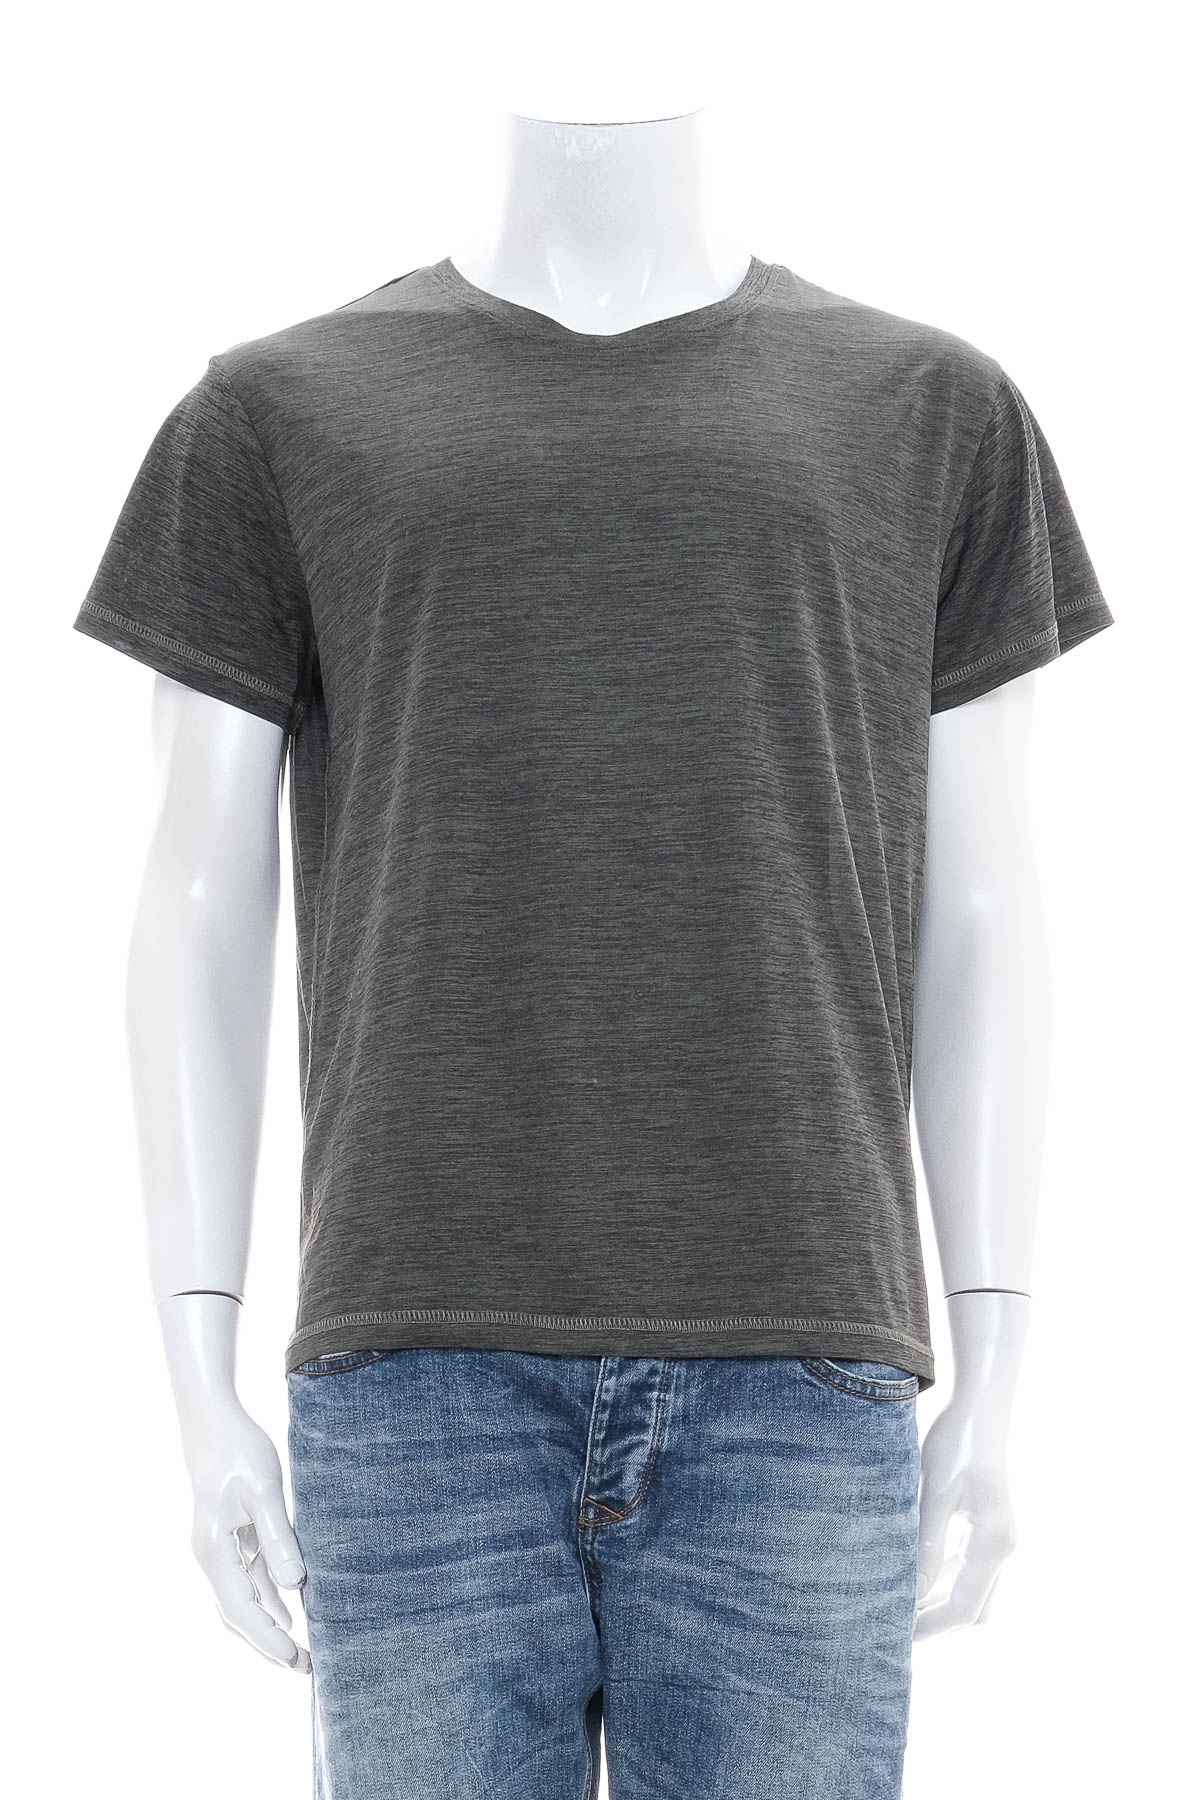 Men's T-shirt - Grinario - 0